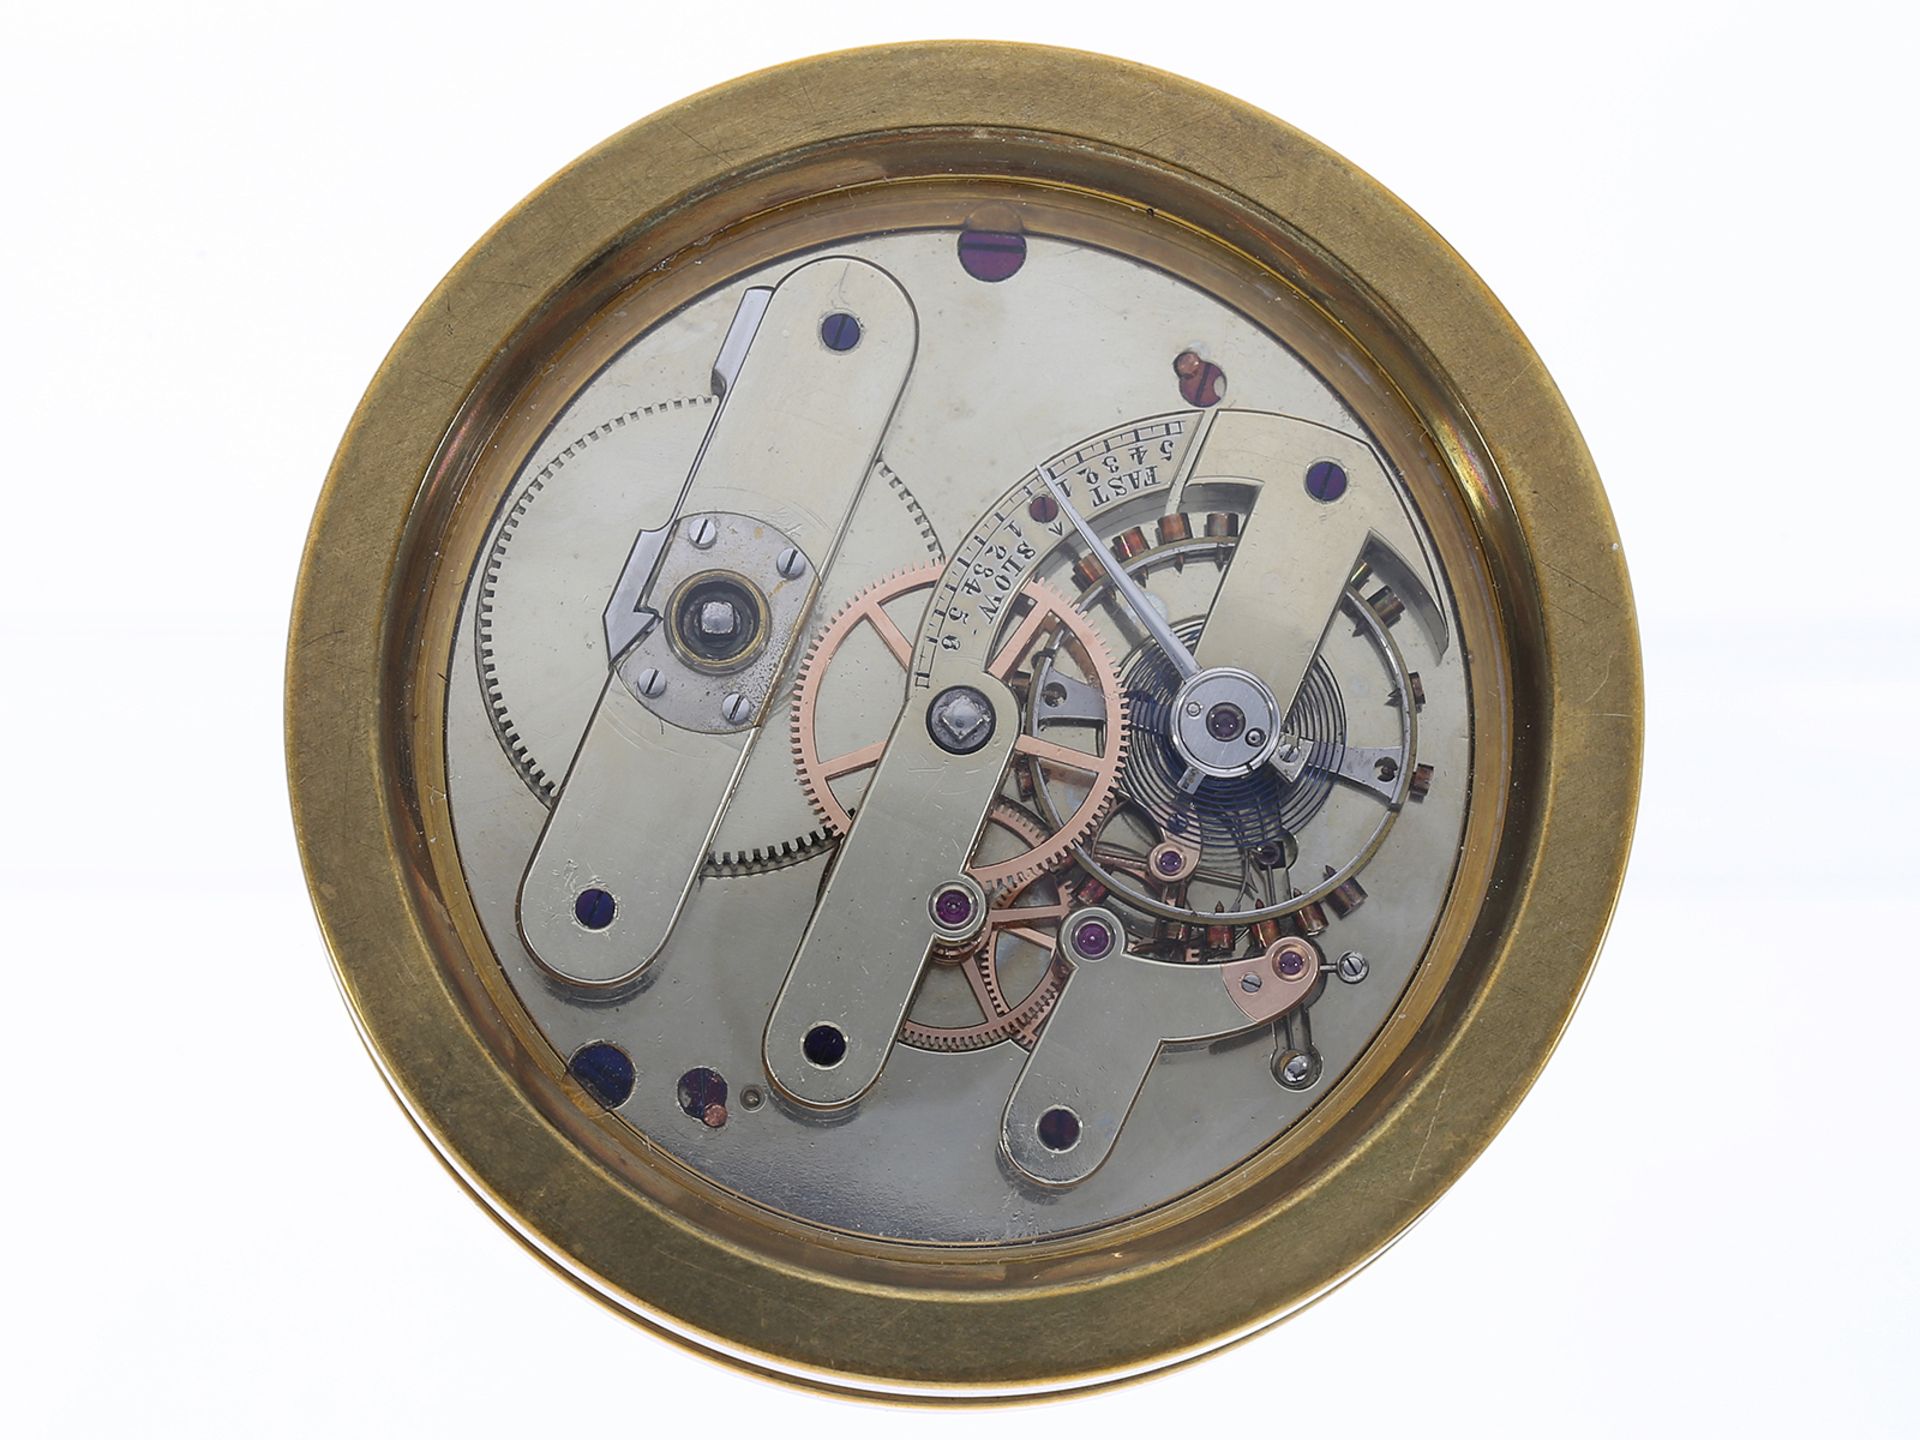 Taschenuhr: exquisites Chronometerwerk Kaliber Jürgensen, signiert Matile Locle, ca. 1870 - Image 2 of 2